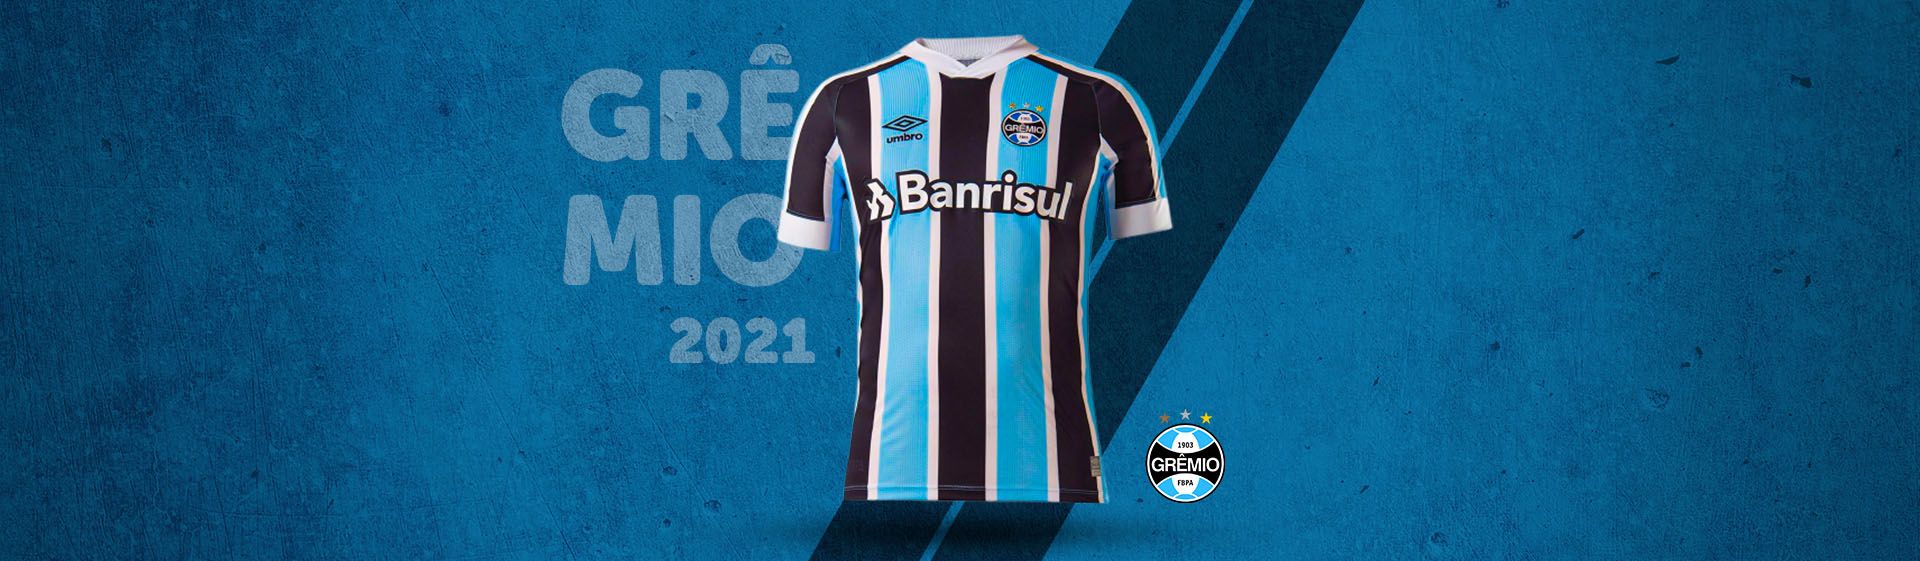 Capa do post: Camisa do Grêmio: camisas do Grêmio para comprar em 2021